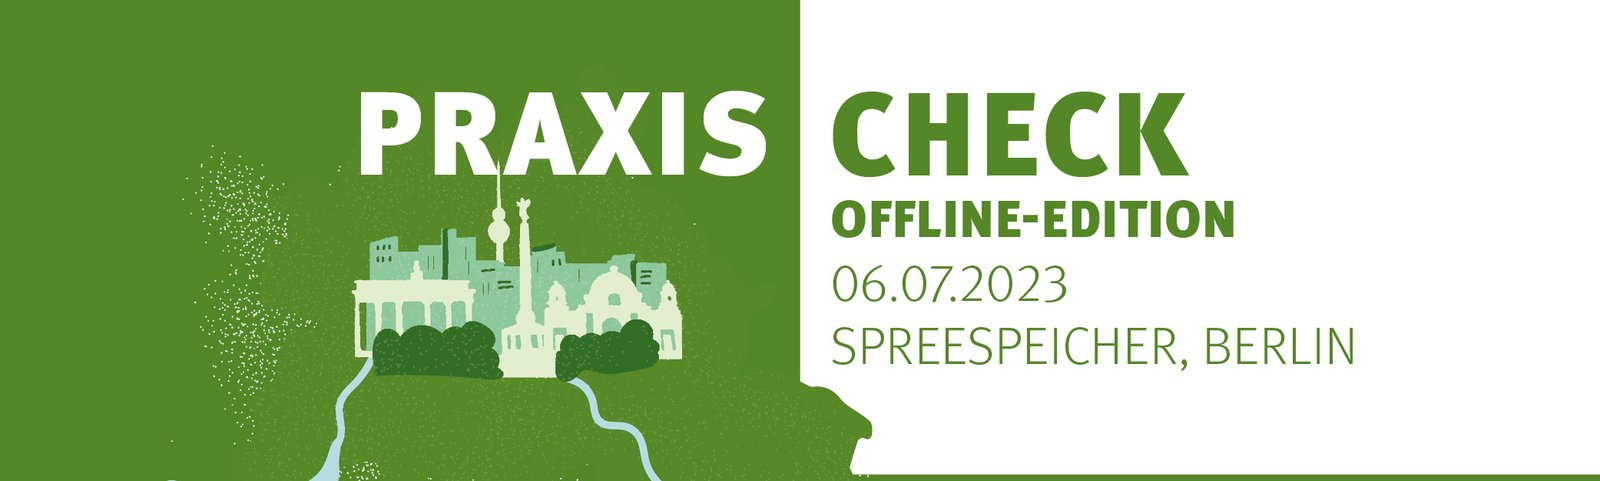 Offline-Edition im Berliner Spreespeicher. 06.07.2023, 18:30 bis 22:00 Uhr